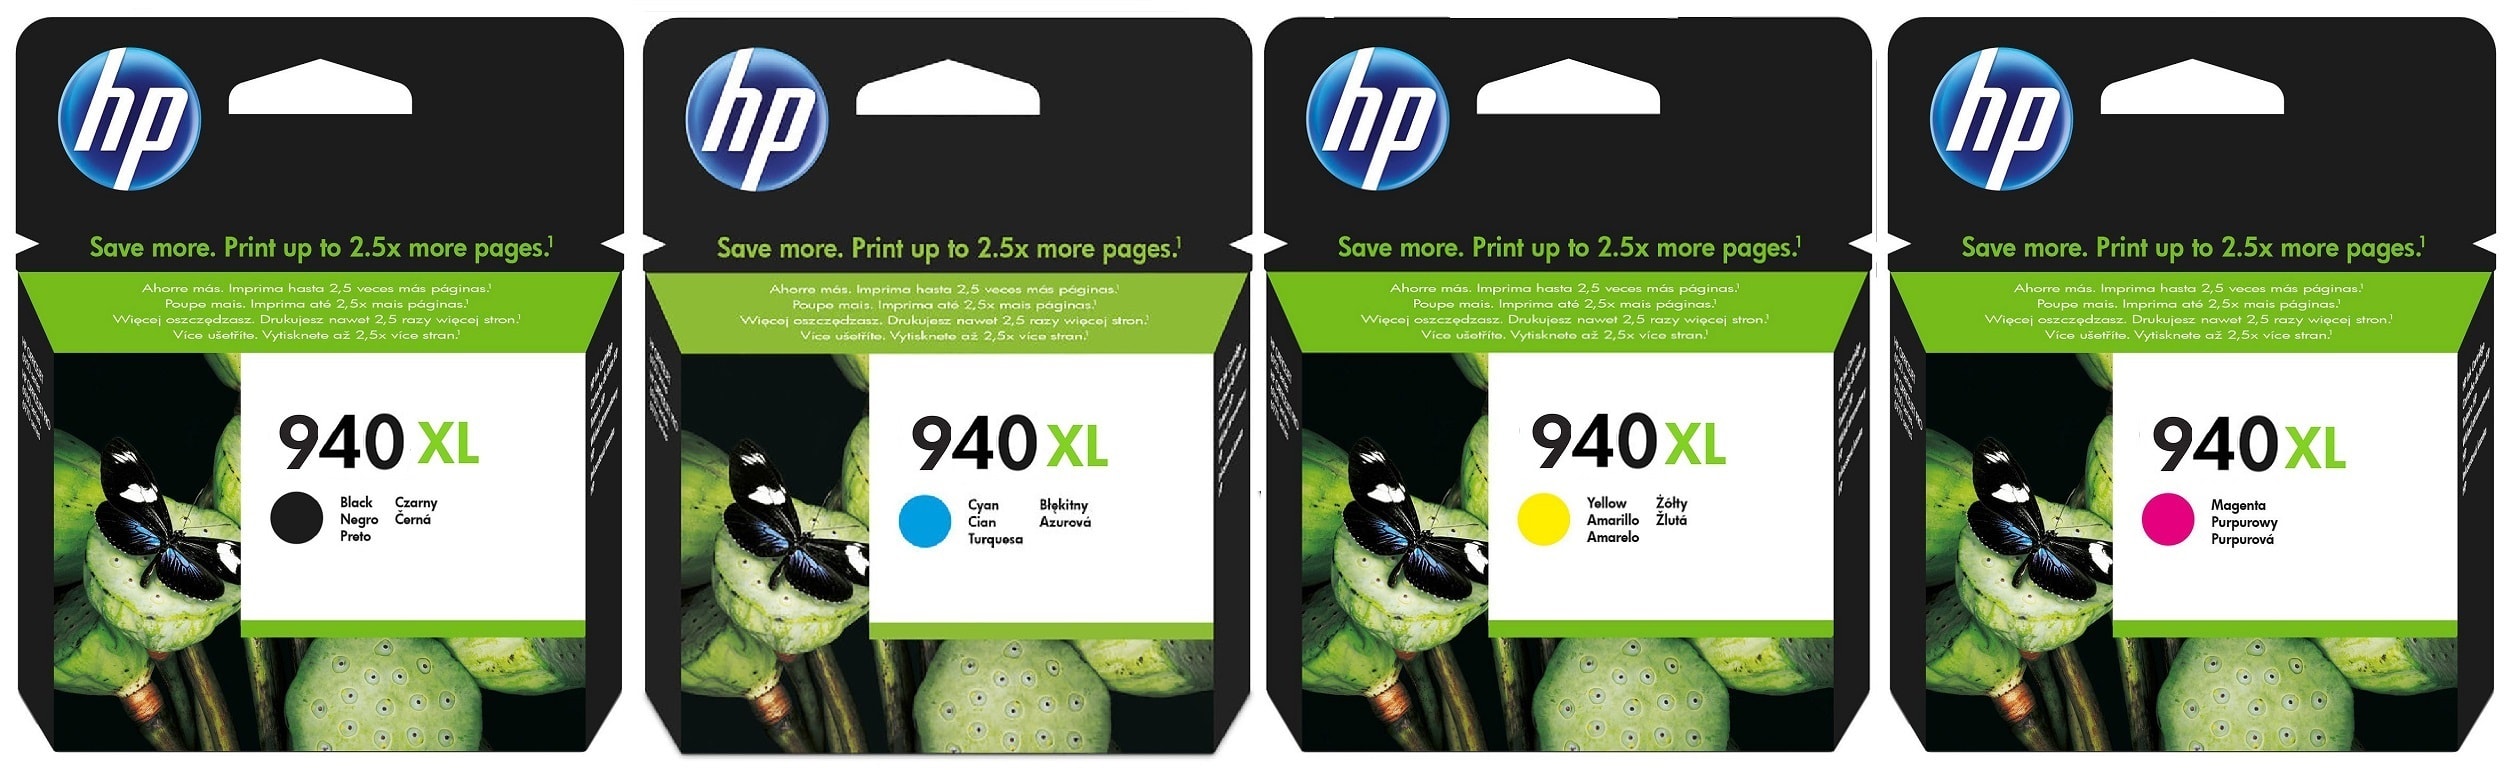 Картриджи hp 940xl для HP Officejet Pro 8500A. Купить комплект оригинальных картриджей.